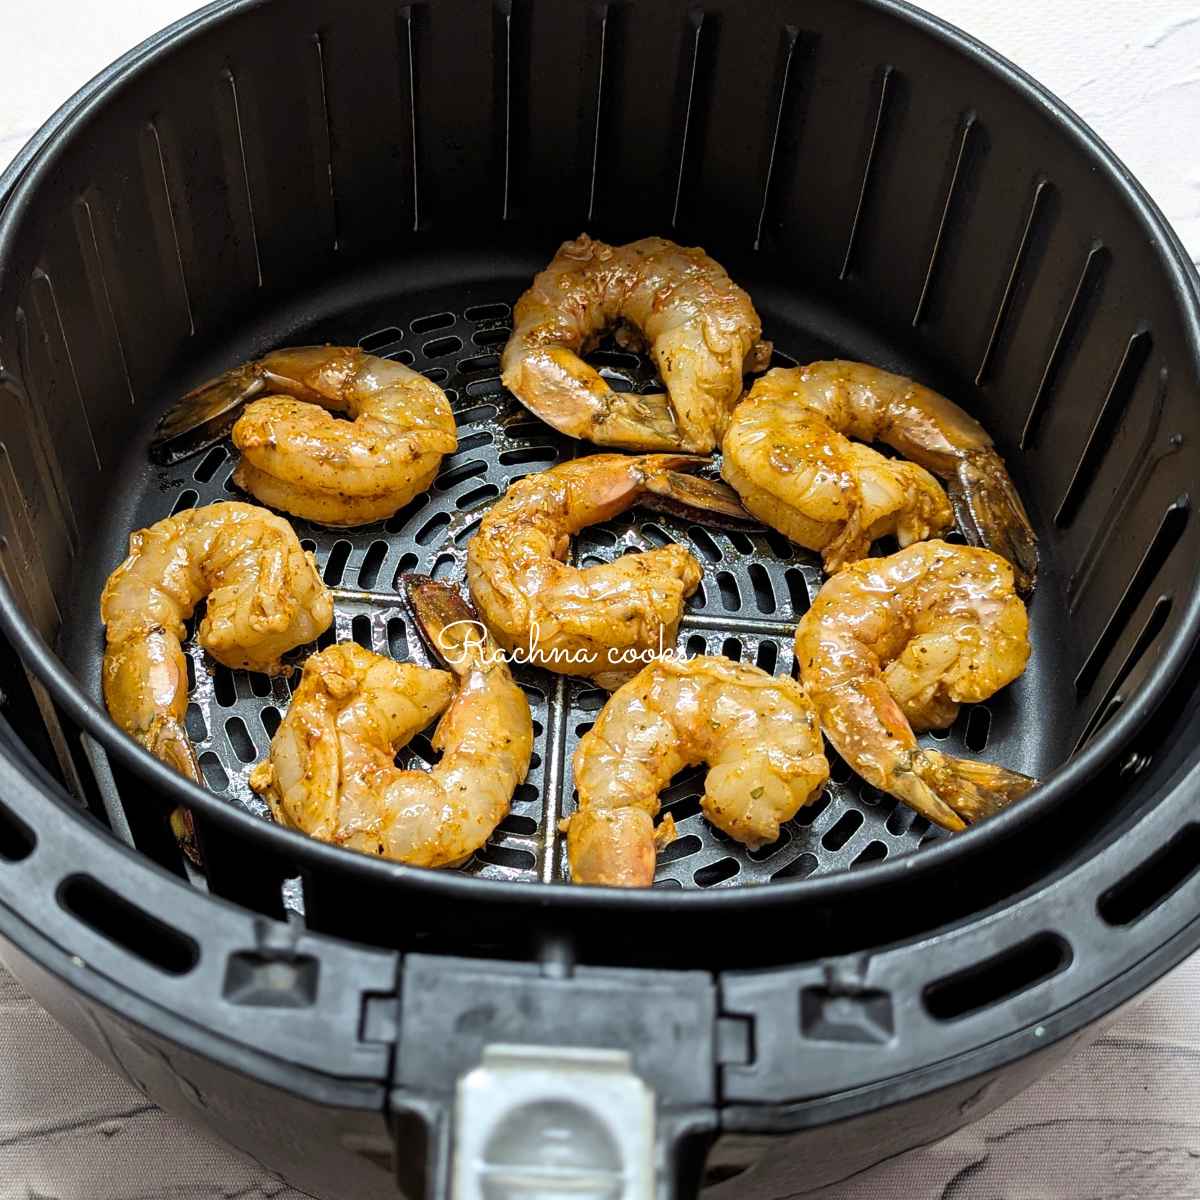 Seasoned shrimp placed in air fryer basket